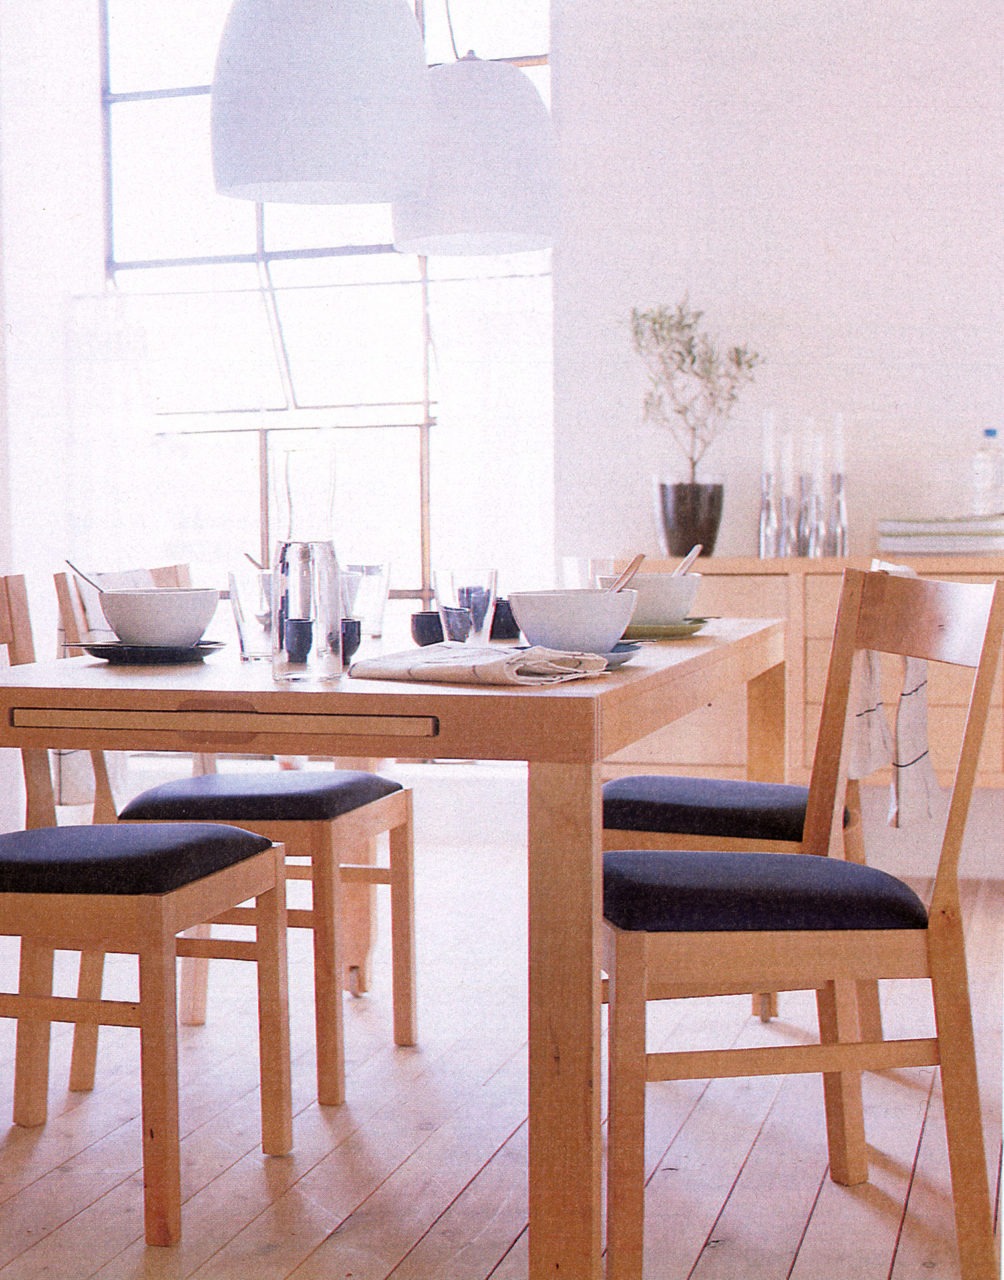 Cuisine claire avec mobilier et sol en bois clair. Chaises avec assise sombre autour d’une table avec rallonge.